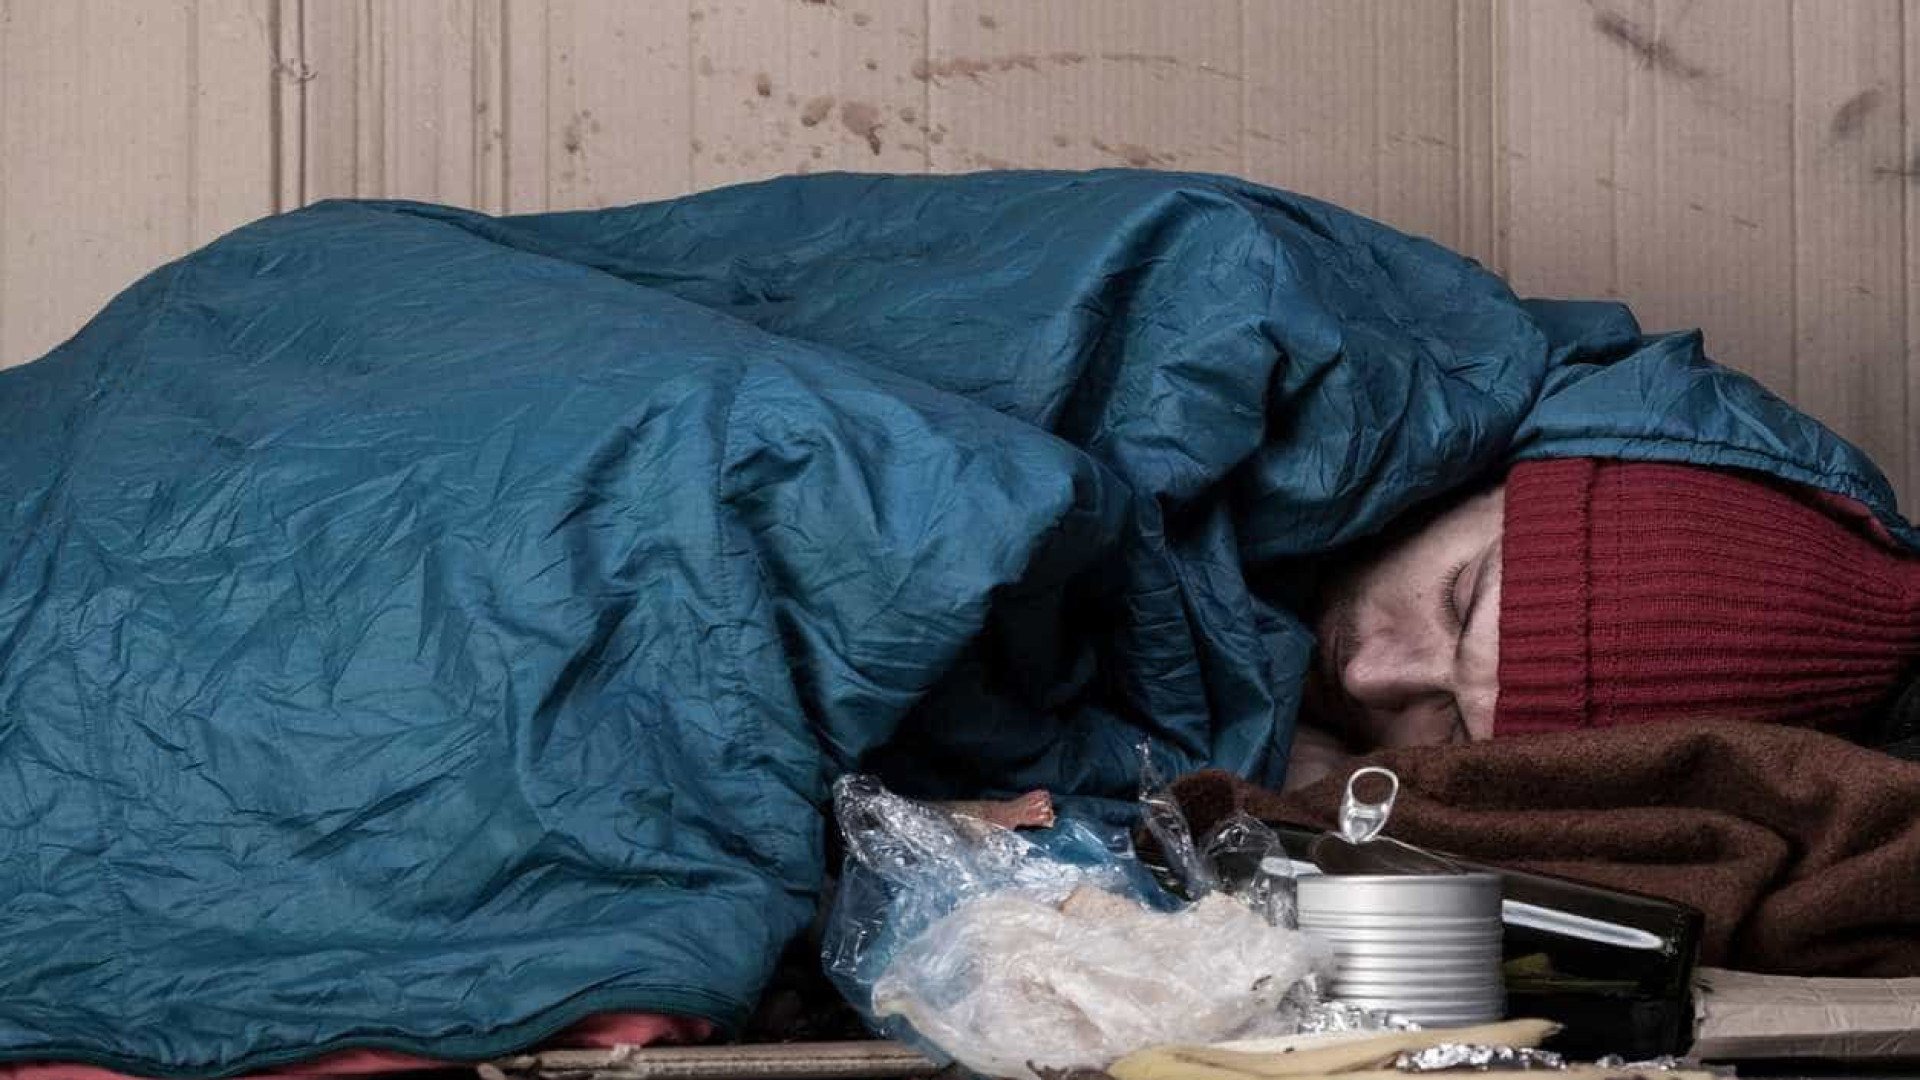 Moradores de rua sÃ£o proibidos de dormir na rua na Hungria